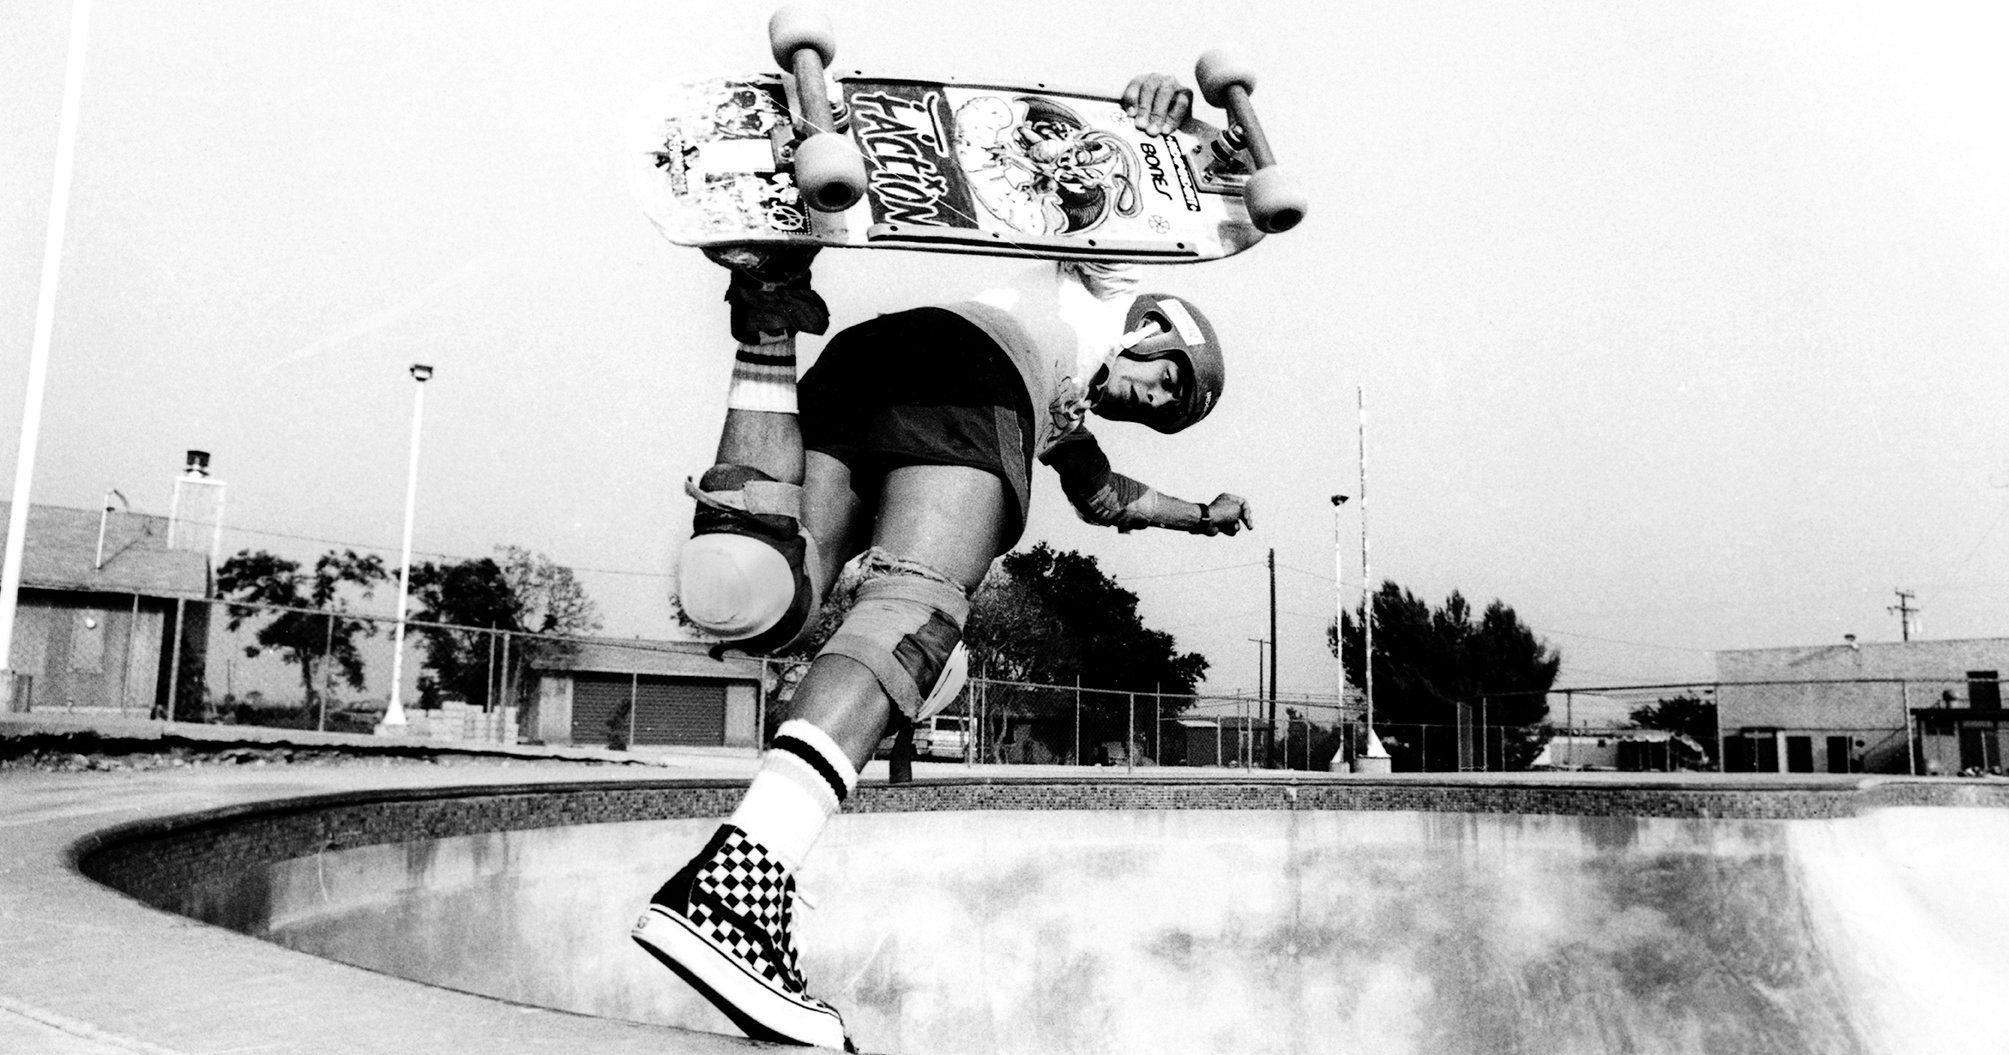 Checkered Vans Skateboard Logo - Steve Van Doren and Tony Alva on the Early Days of Vans